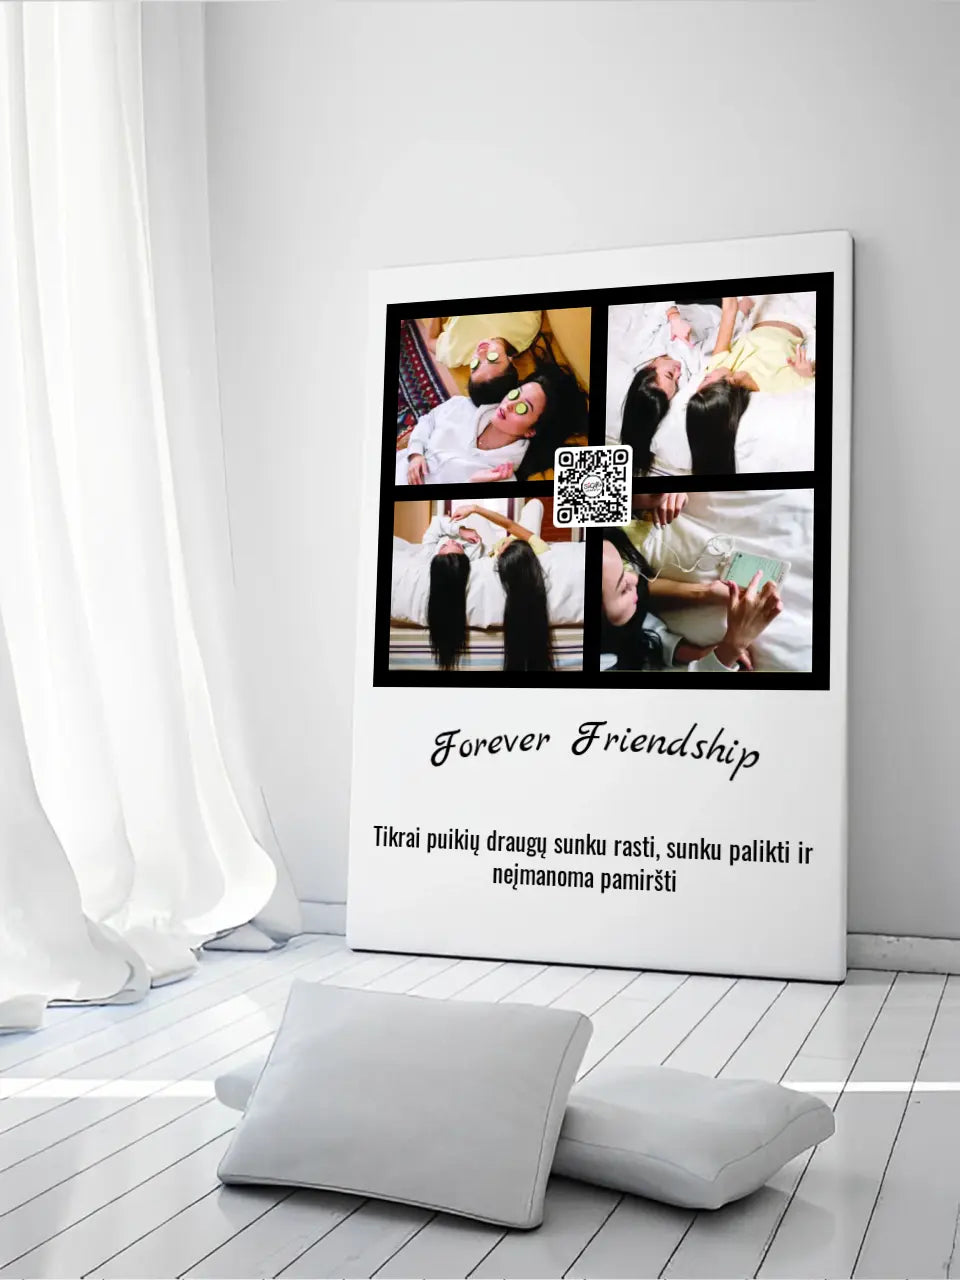 Personalizuotas "Forever Friendship" dizaino kūrinys ant drobės su jūsų nuotraukomis ir tekstu